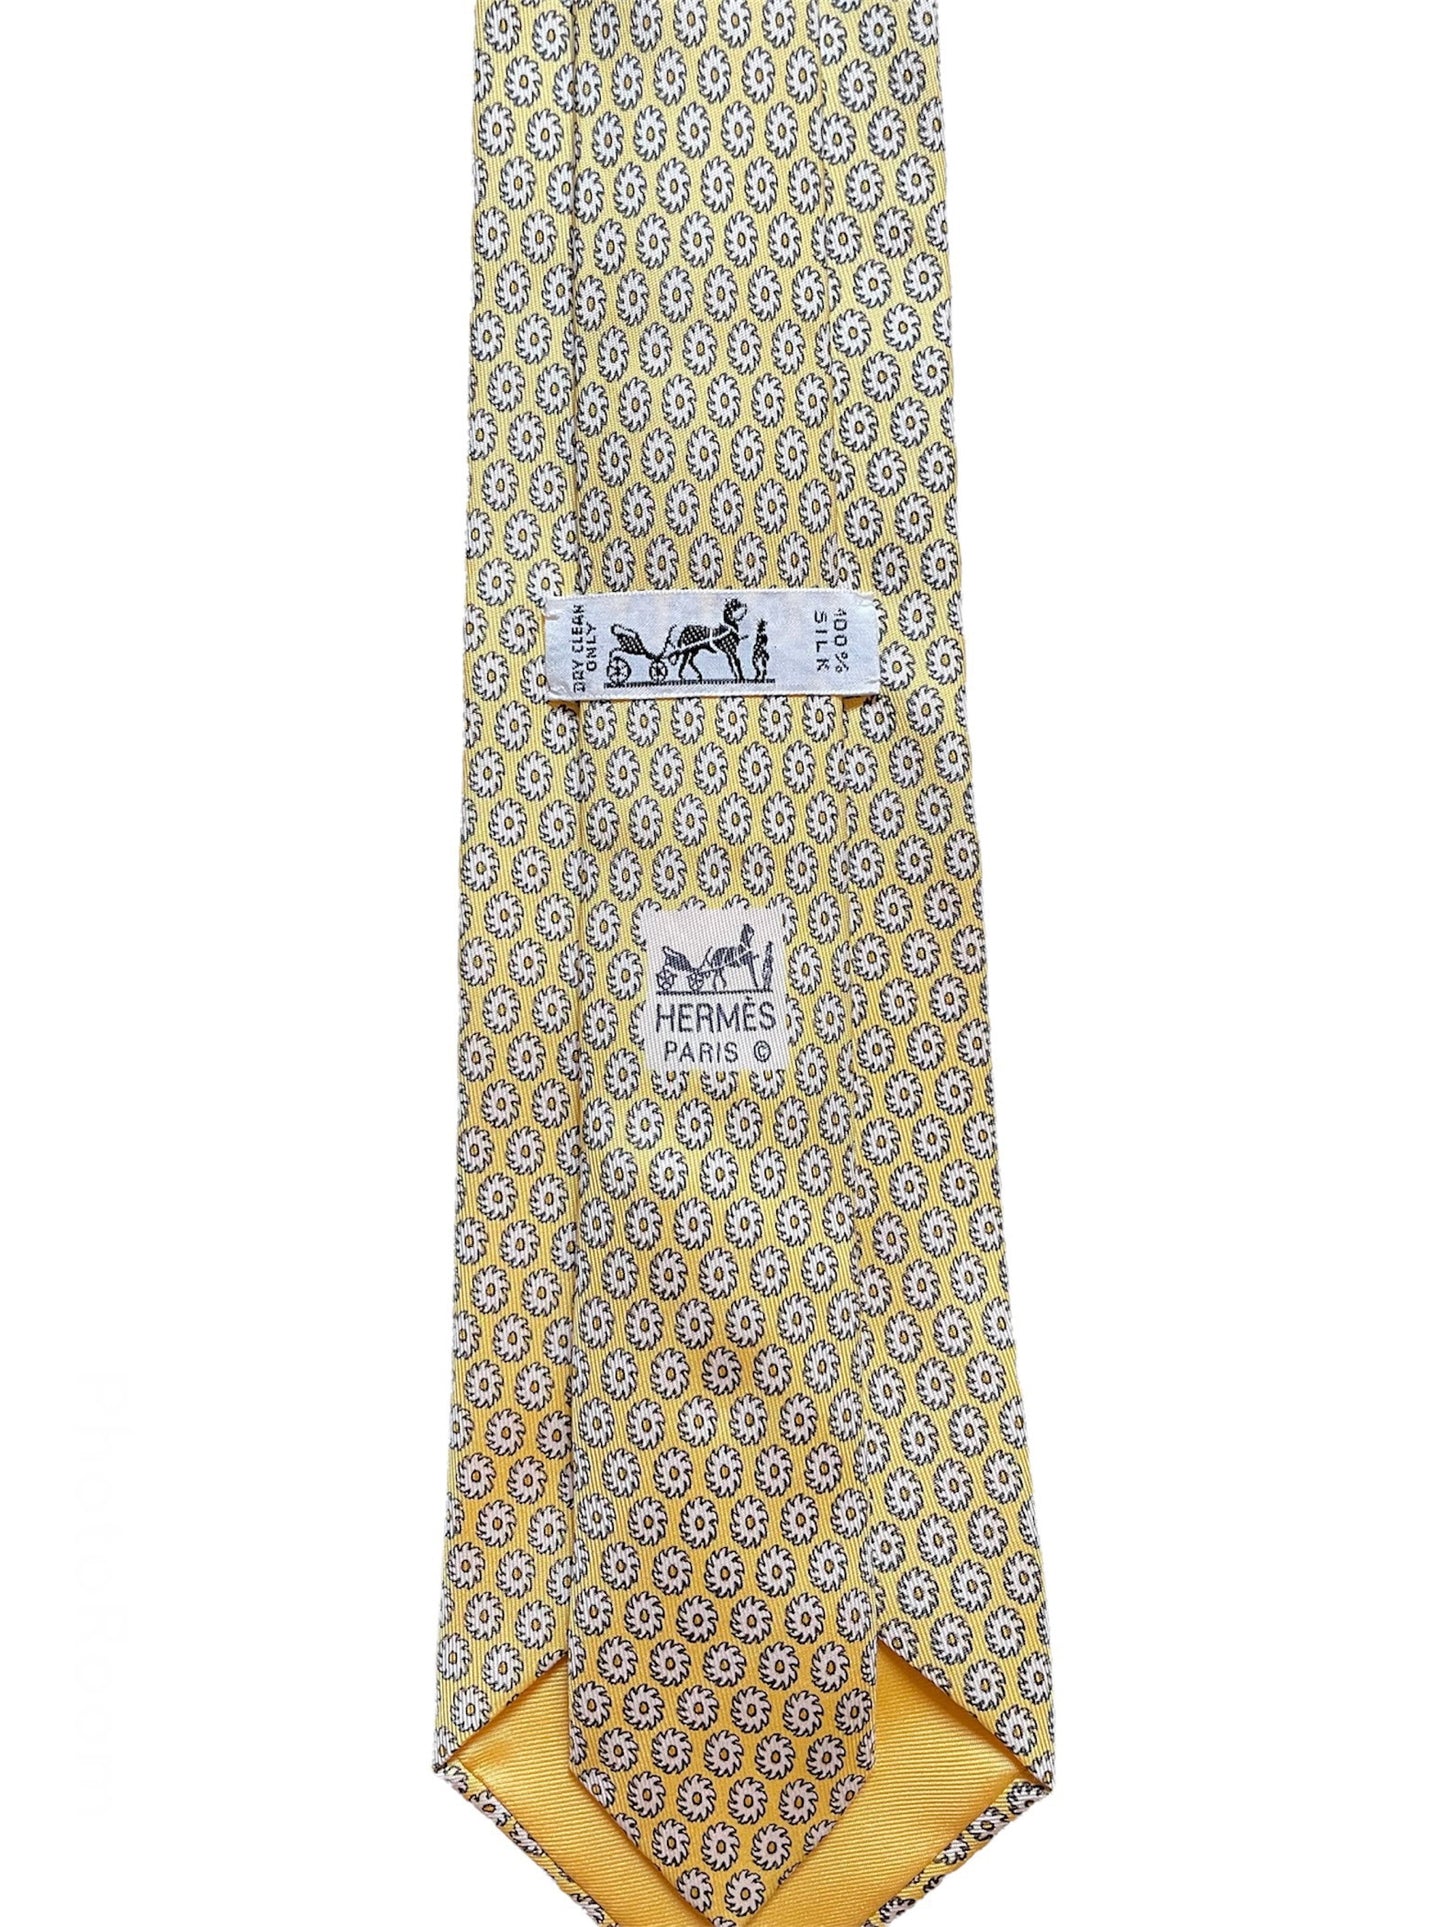 Cravate Hermès jaune en soie